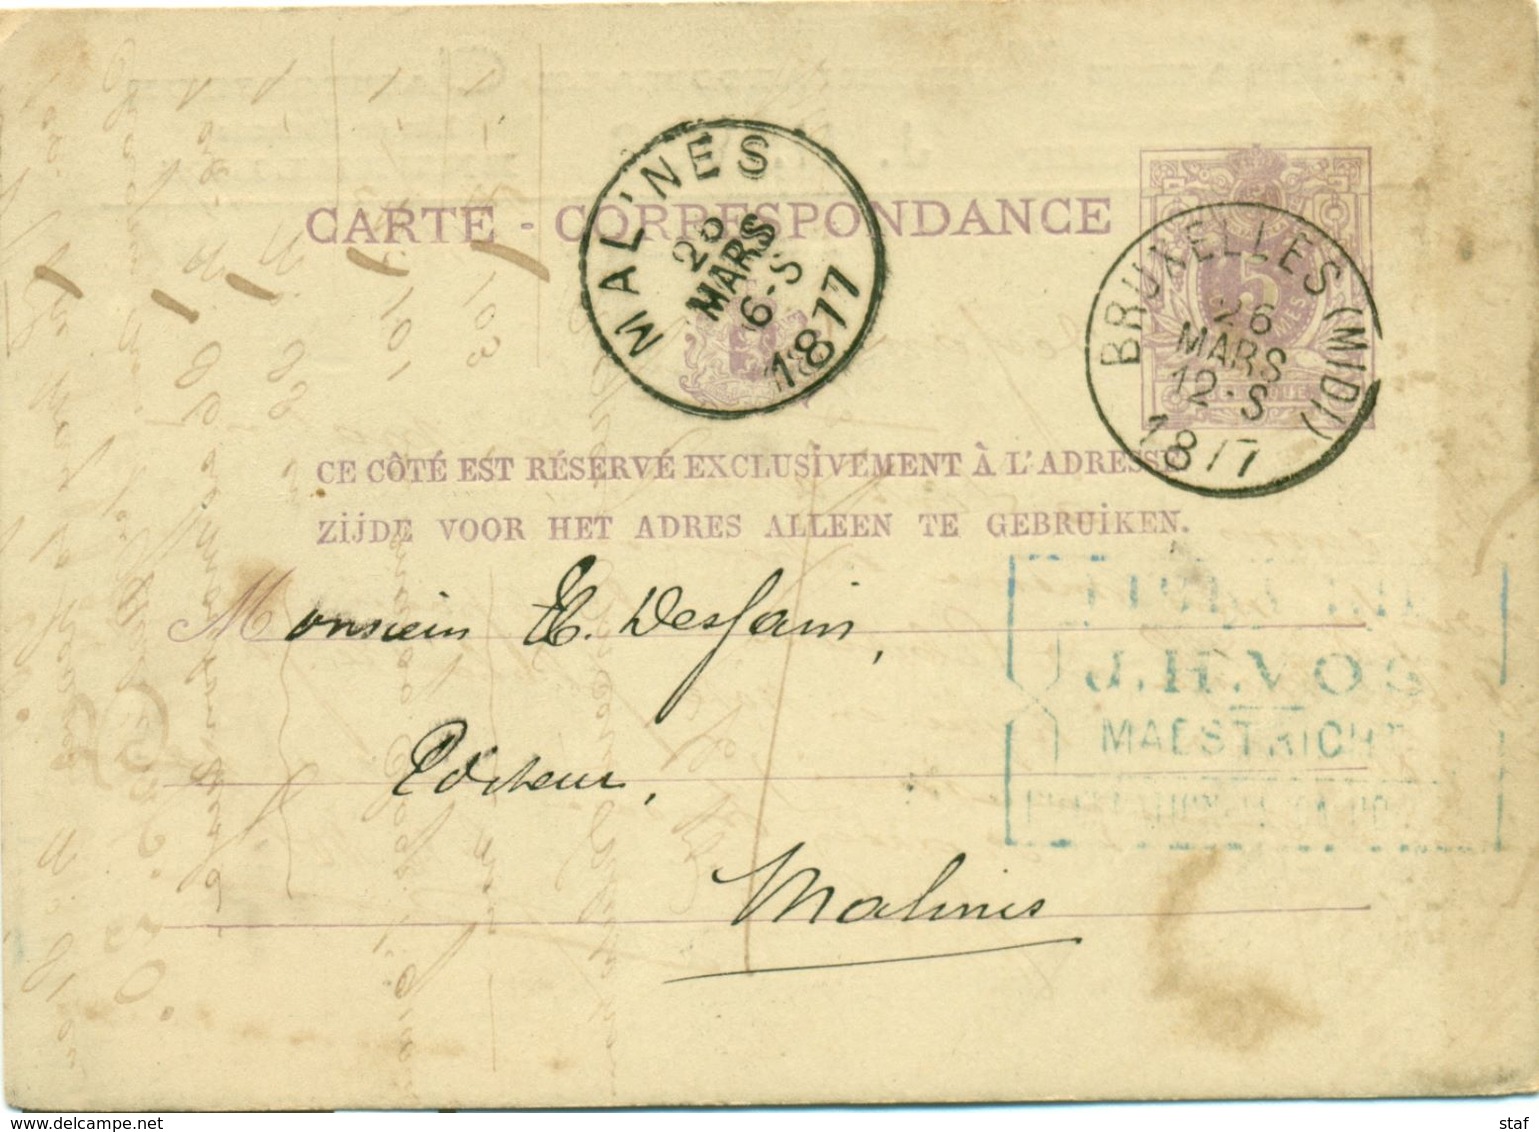 Briefkaart - Carte Correspondance Nr 9 - Afz. Librairie Internationale Catholique J. H. Vos Te Maestricht : 1877 - Imprimerie & Papeterie